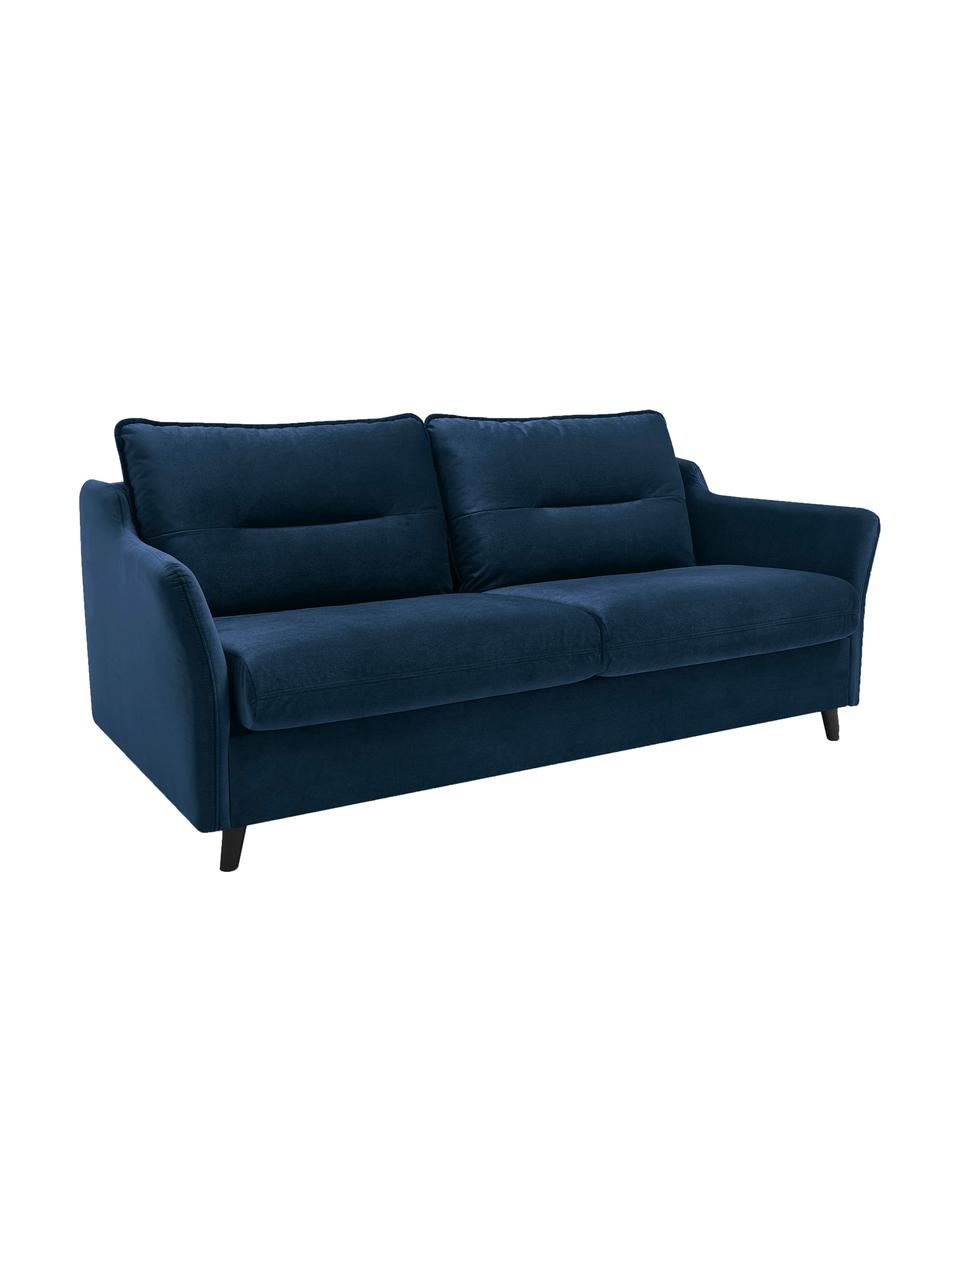 Sofa rozkładana z aksamitu Loft (3-osobowa), Tapicerka: 100% aksamit poliestrowy, Nogi: metal lakierowany, Granatowy, S 191 x G 100 cm